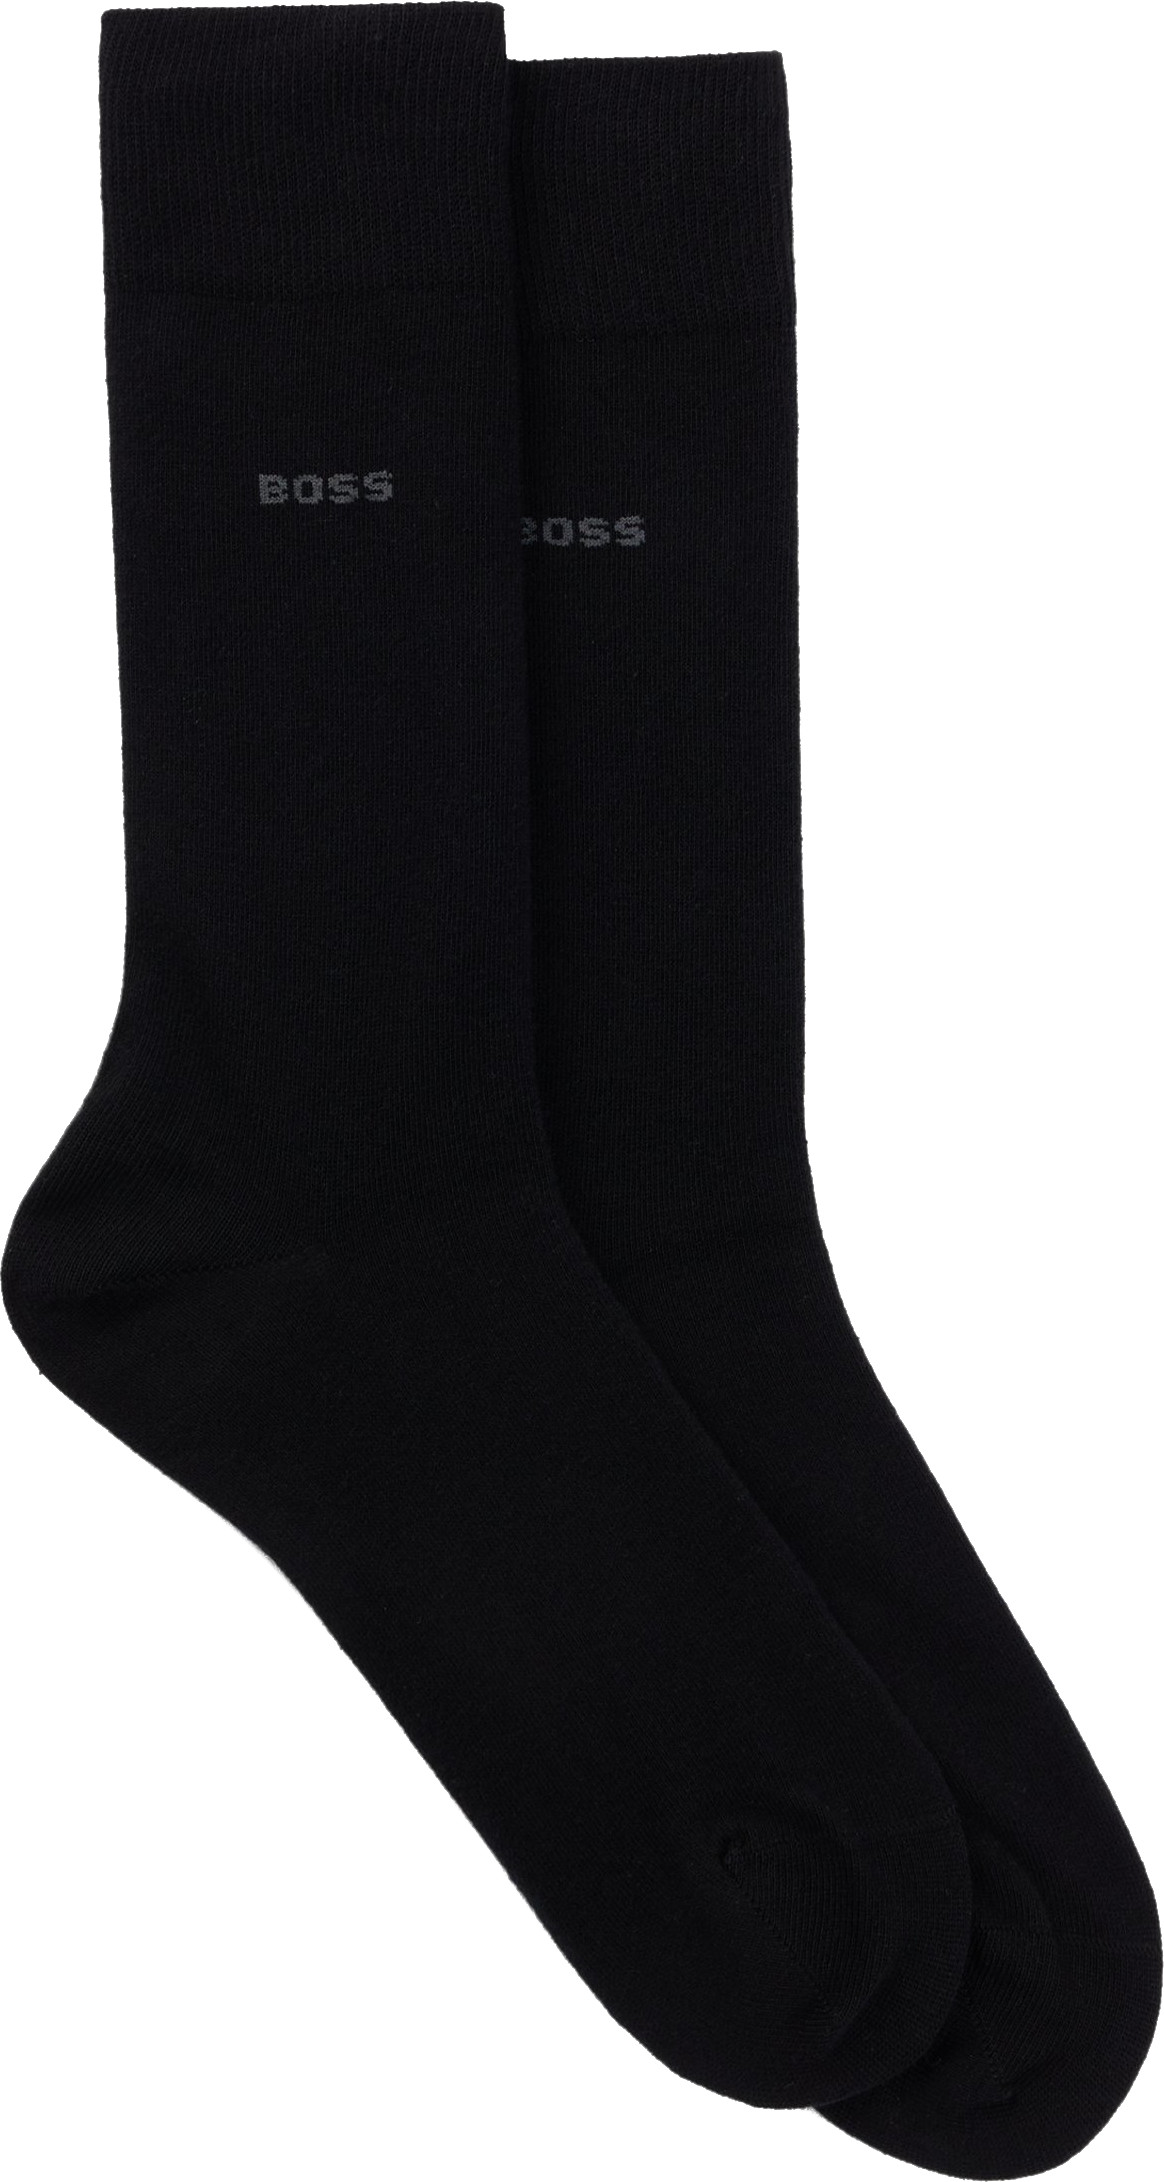 Hugo Boss 2 PACK - pánské ponožky BOSS 50516616-001 39-42